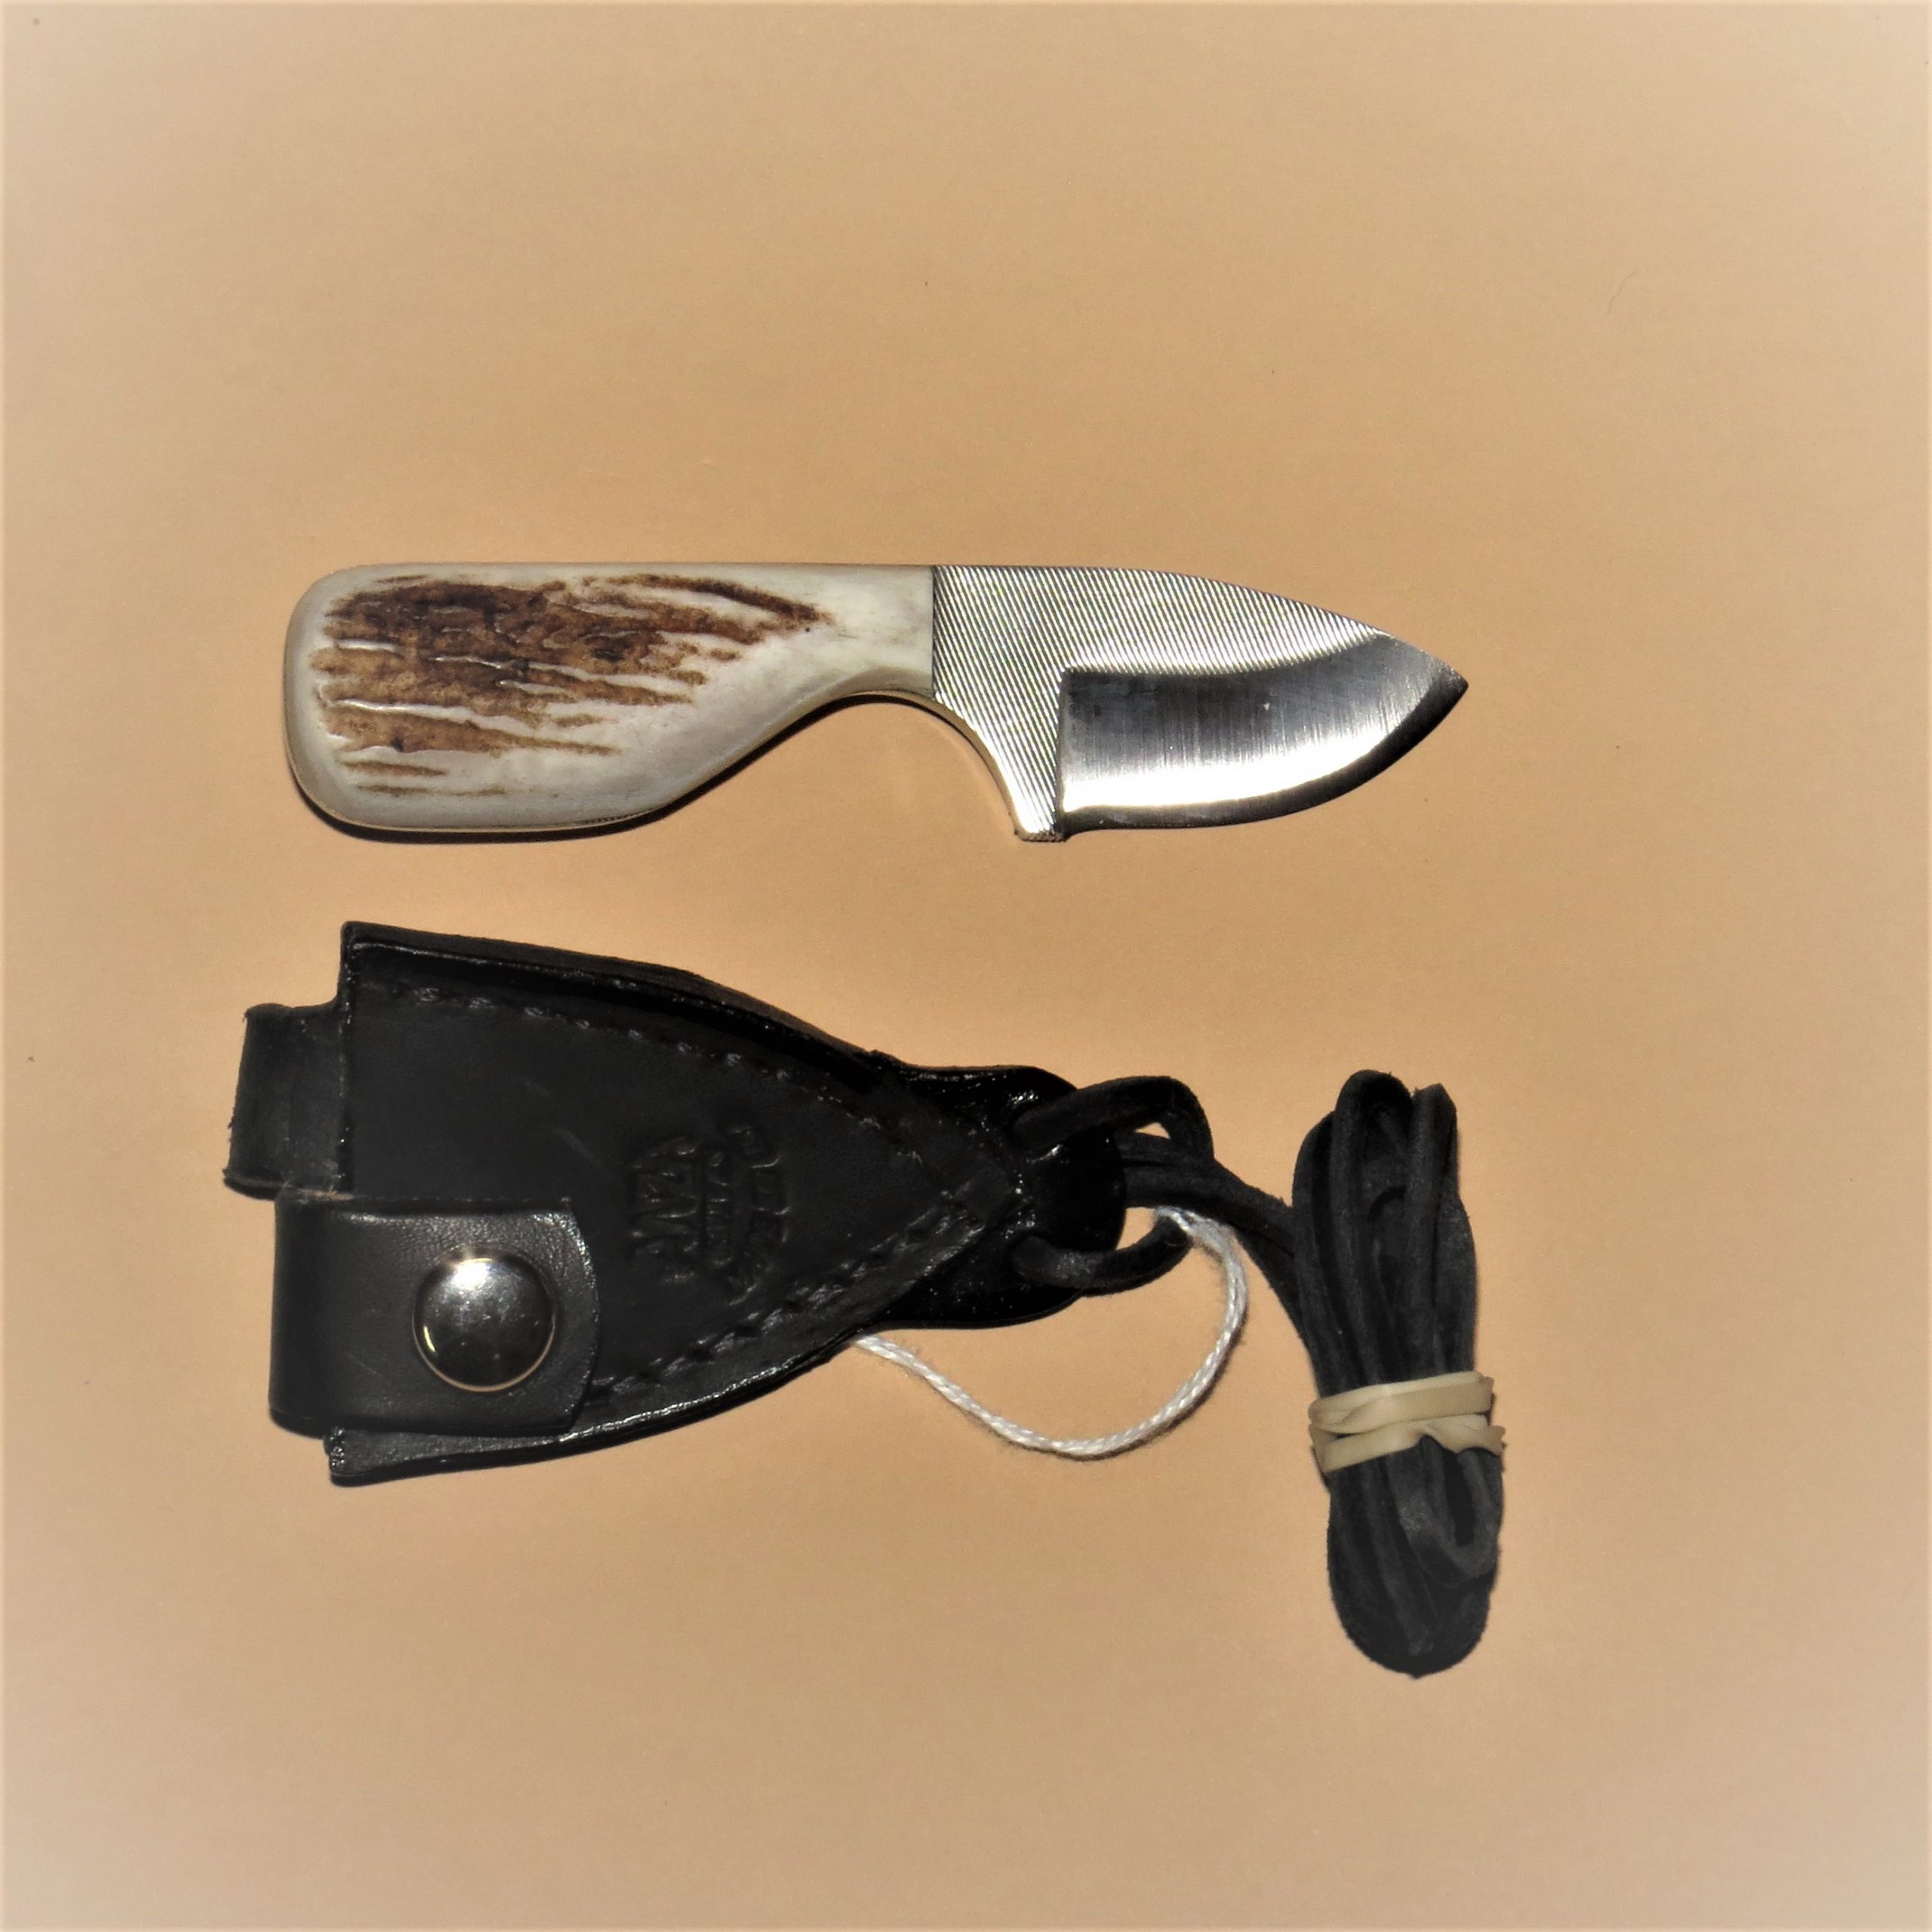 #377 Knife with Sheath